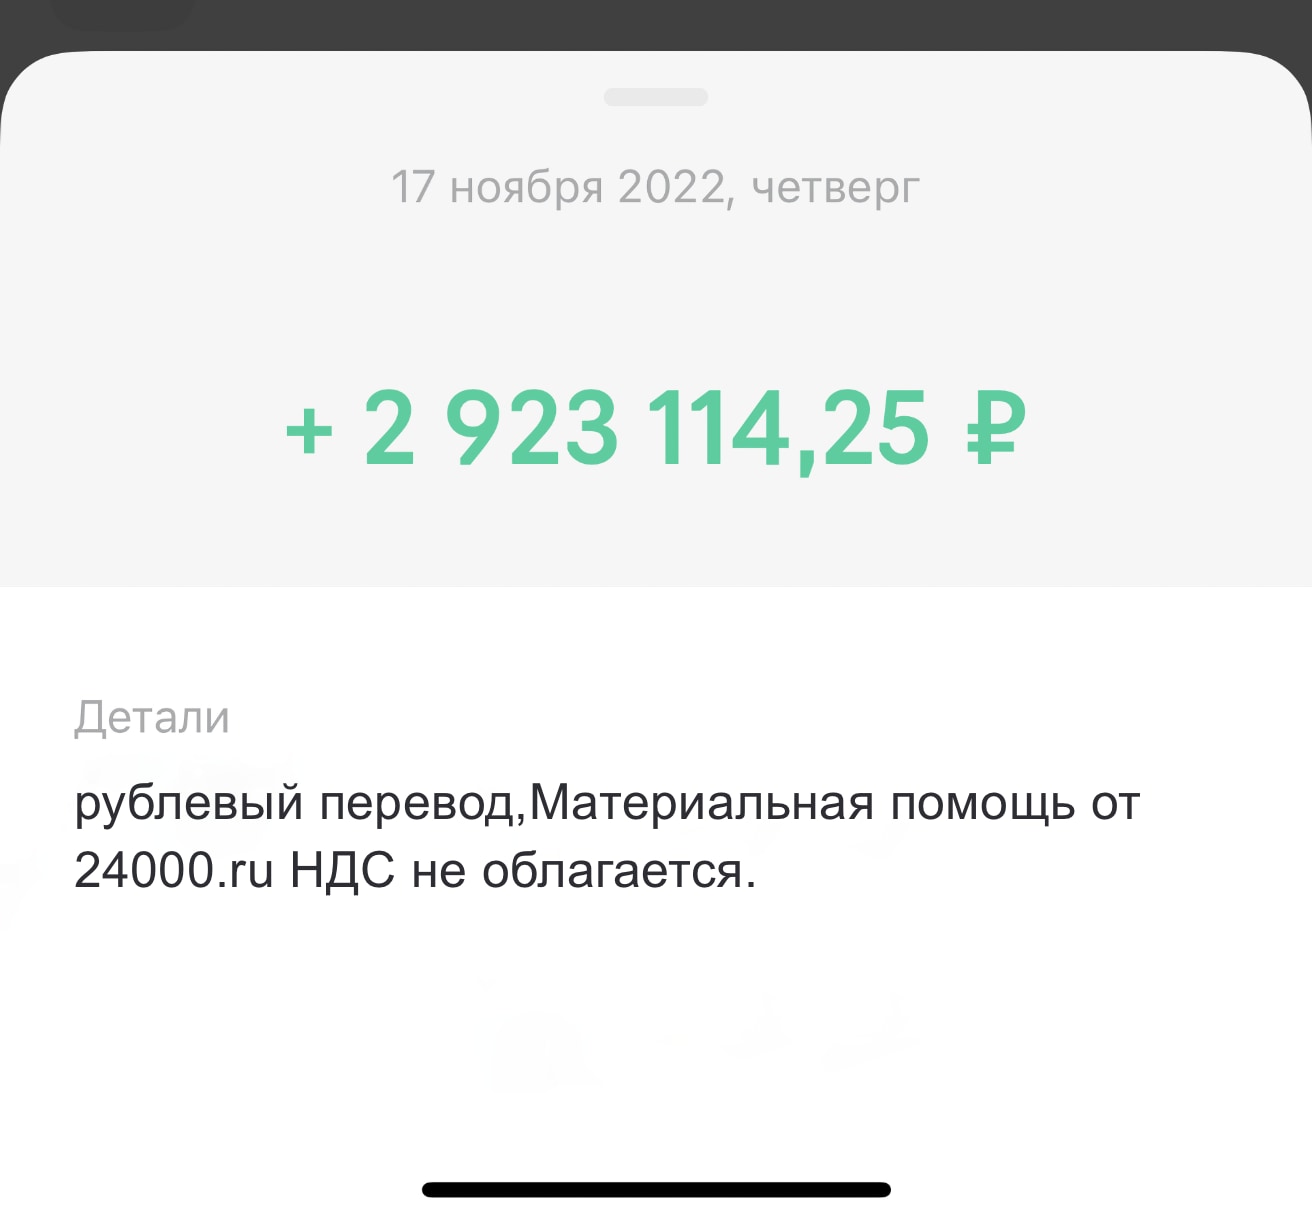 Помогли купить квартиру помощь богатых 24000.ru отзывы